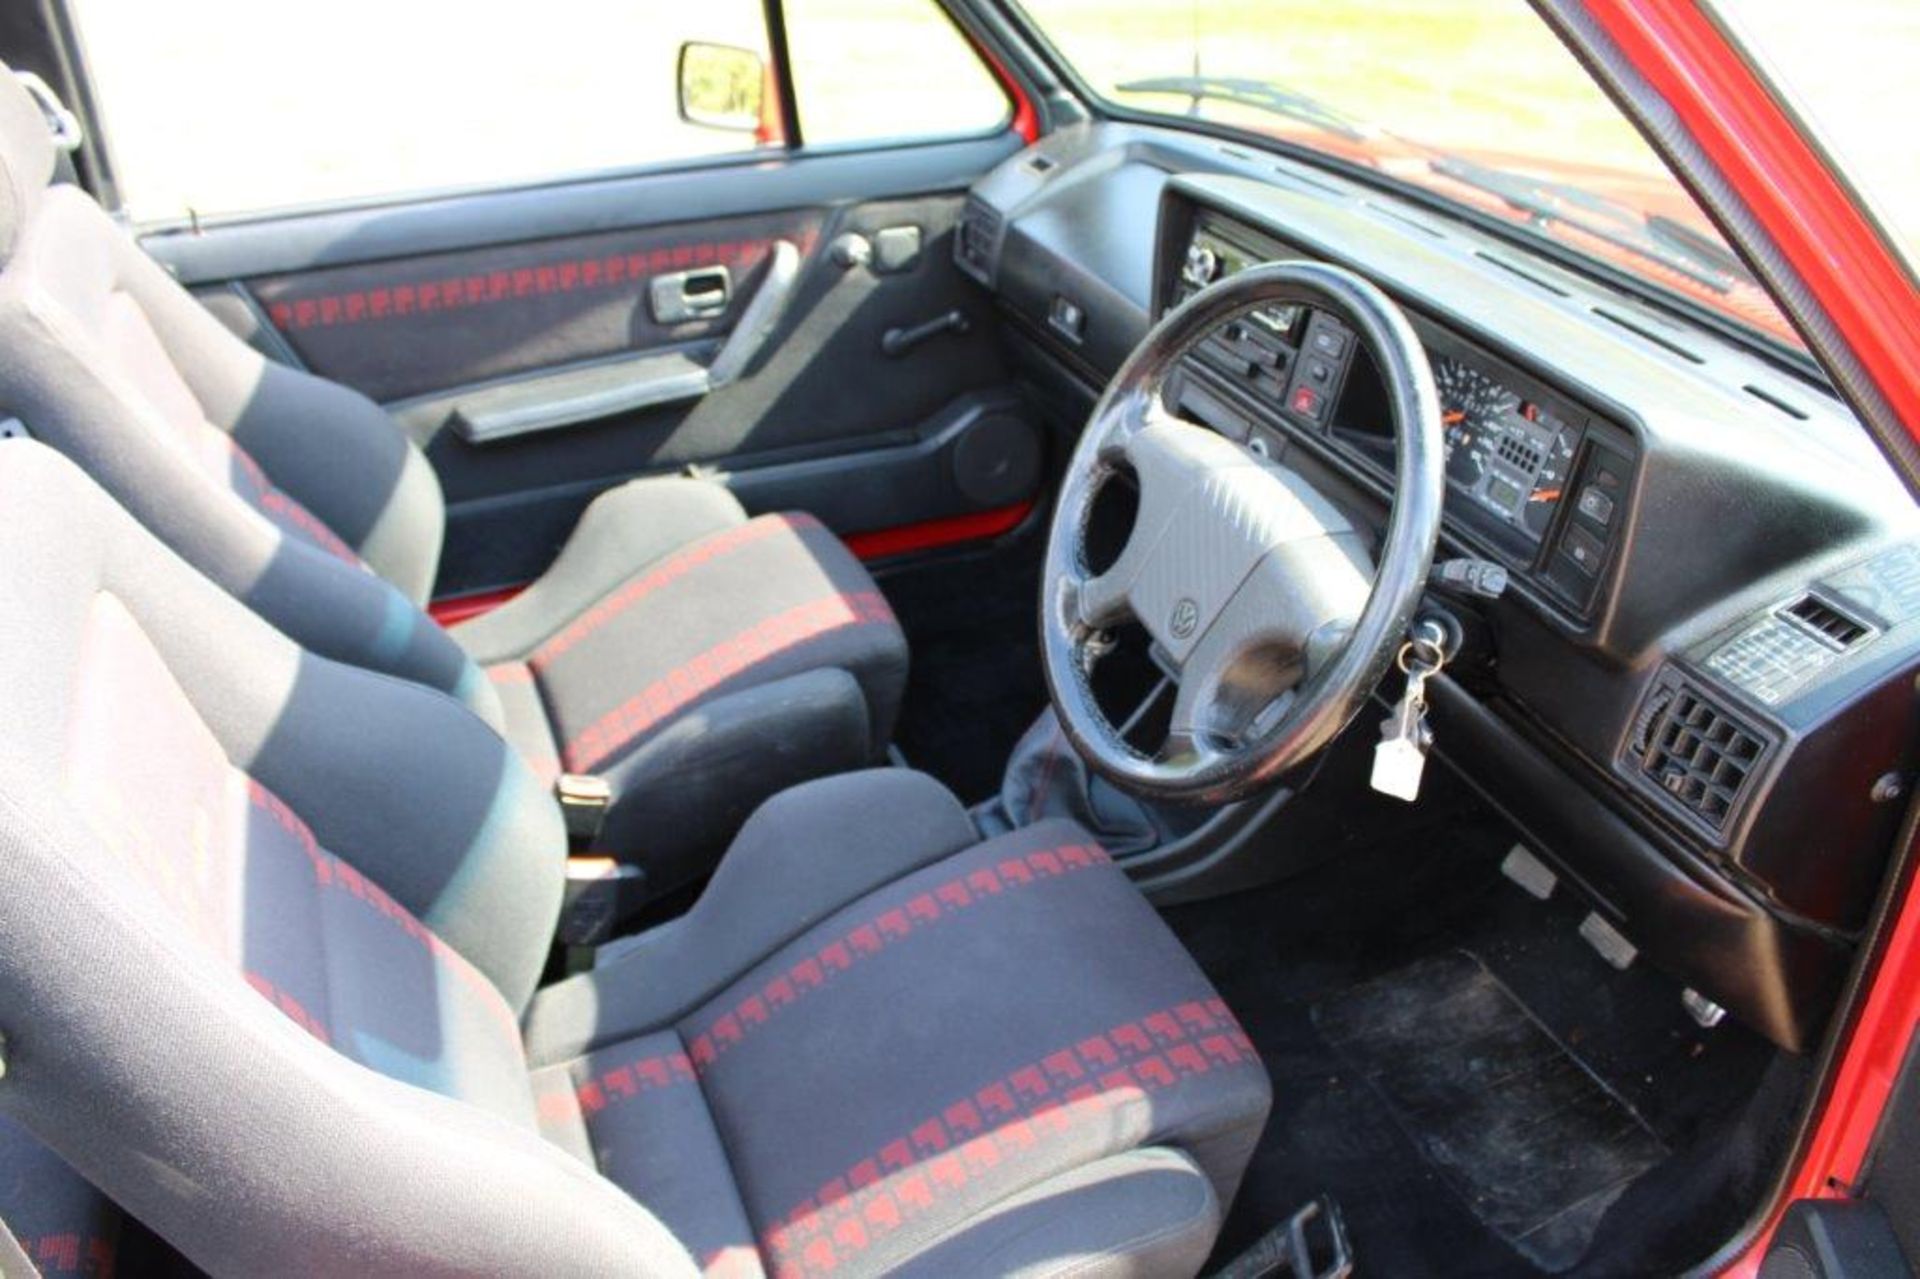 1991 VW Golf 1.8 GTi Cabriolet Sportline - Image 16 of 31